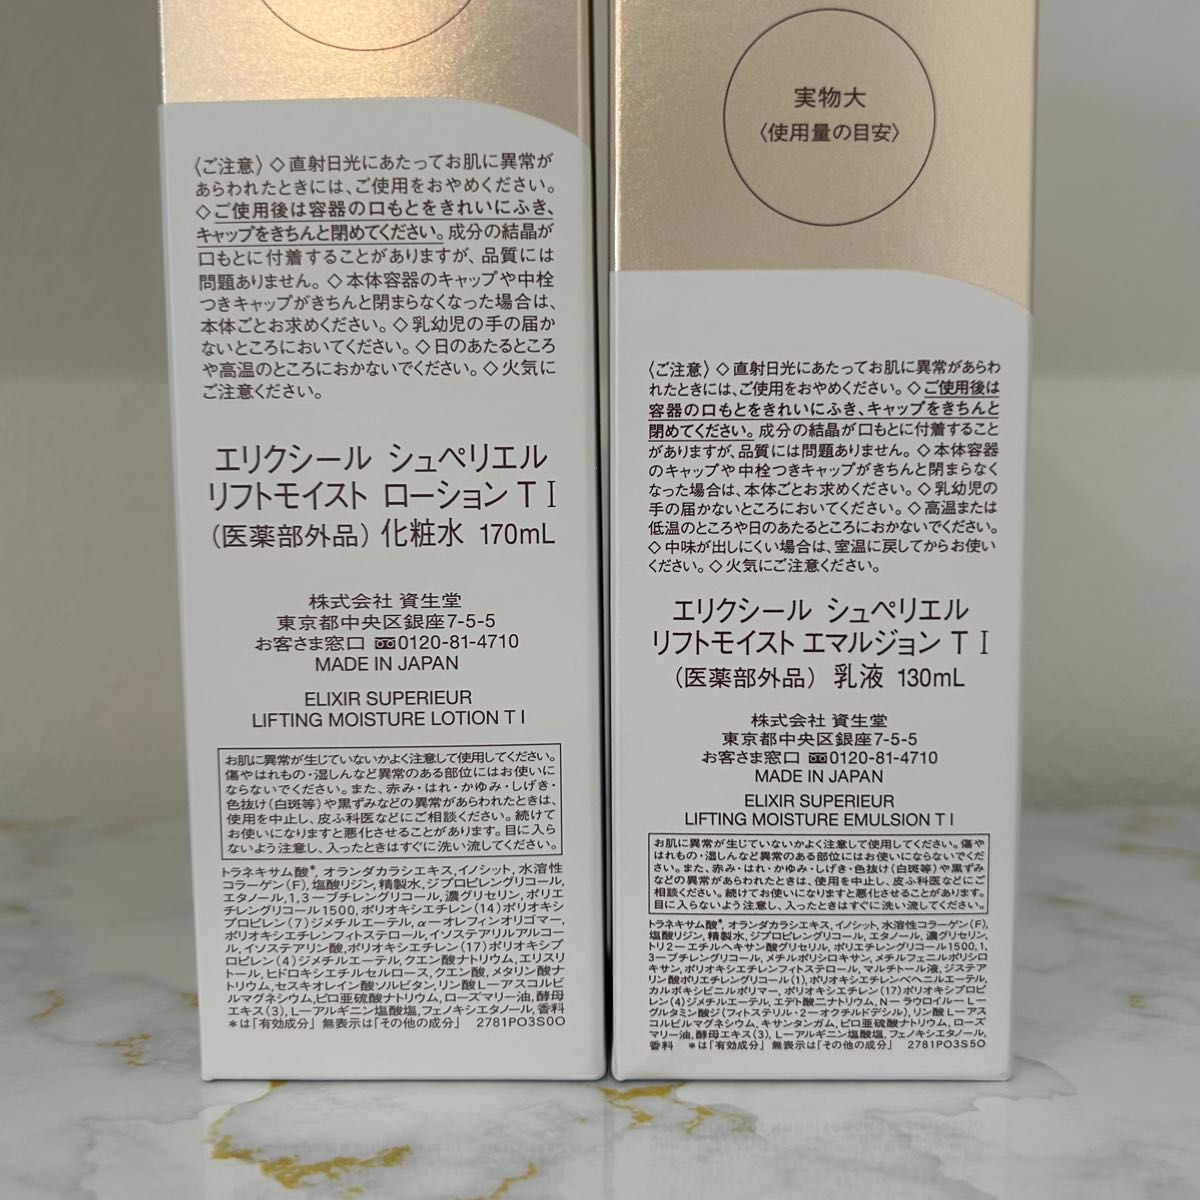 【新品未開封】 エリクシール シュペリエル リフトモイスト 化粧水・ 乳液本体セット